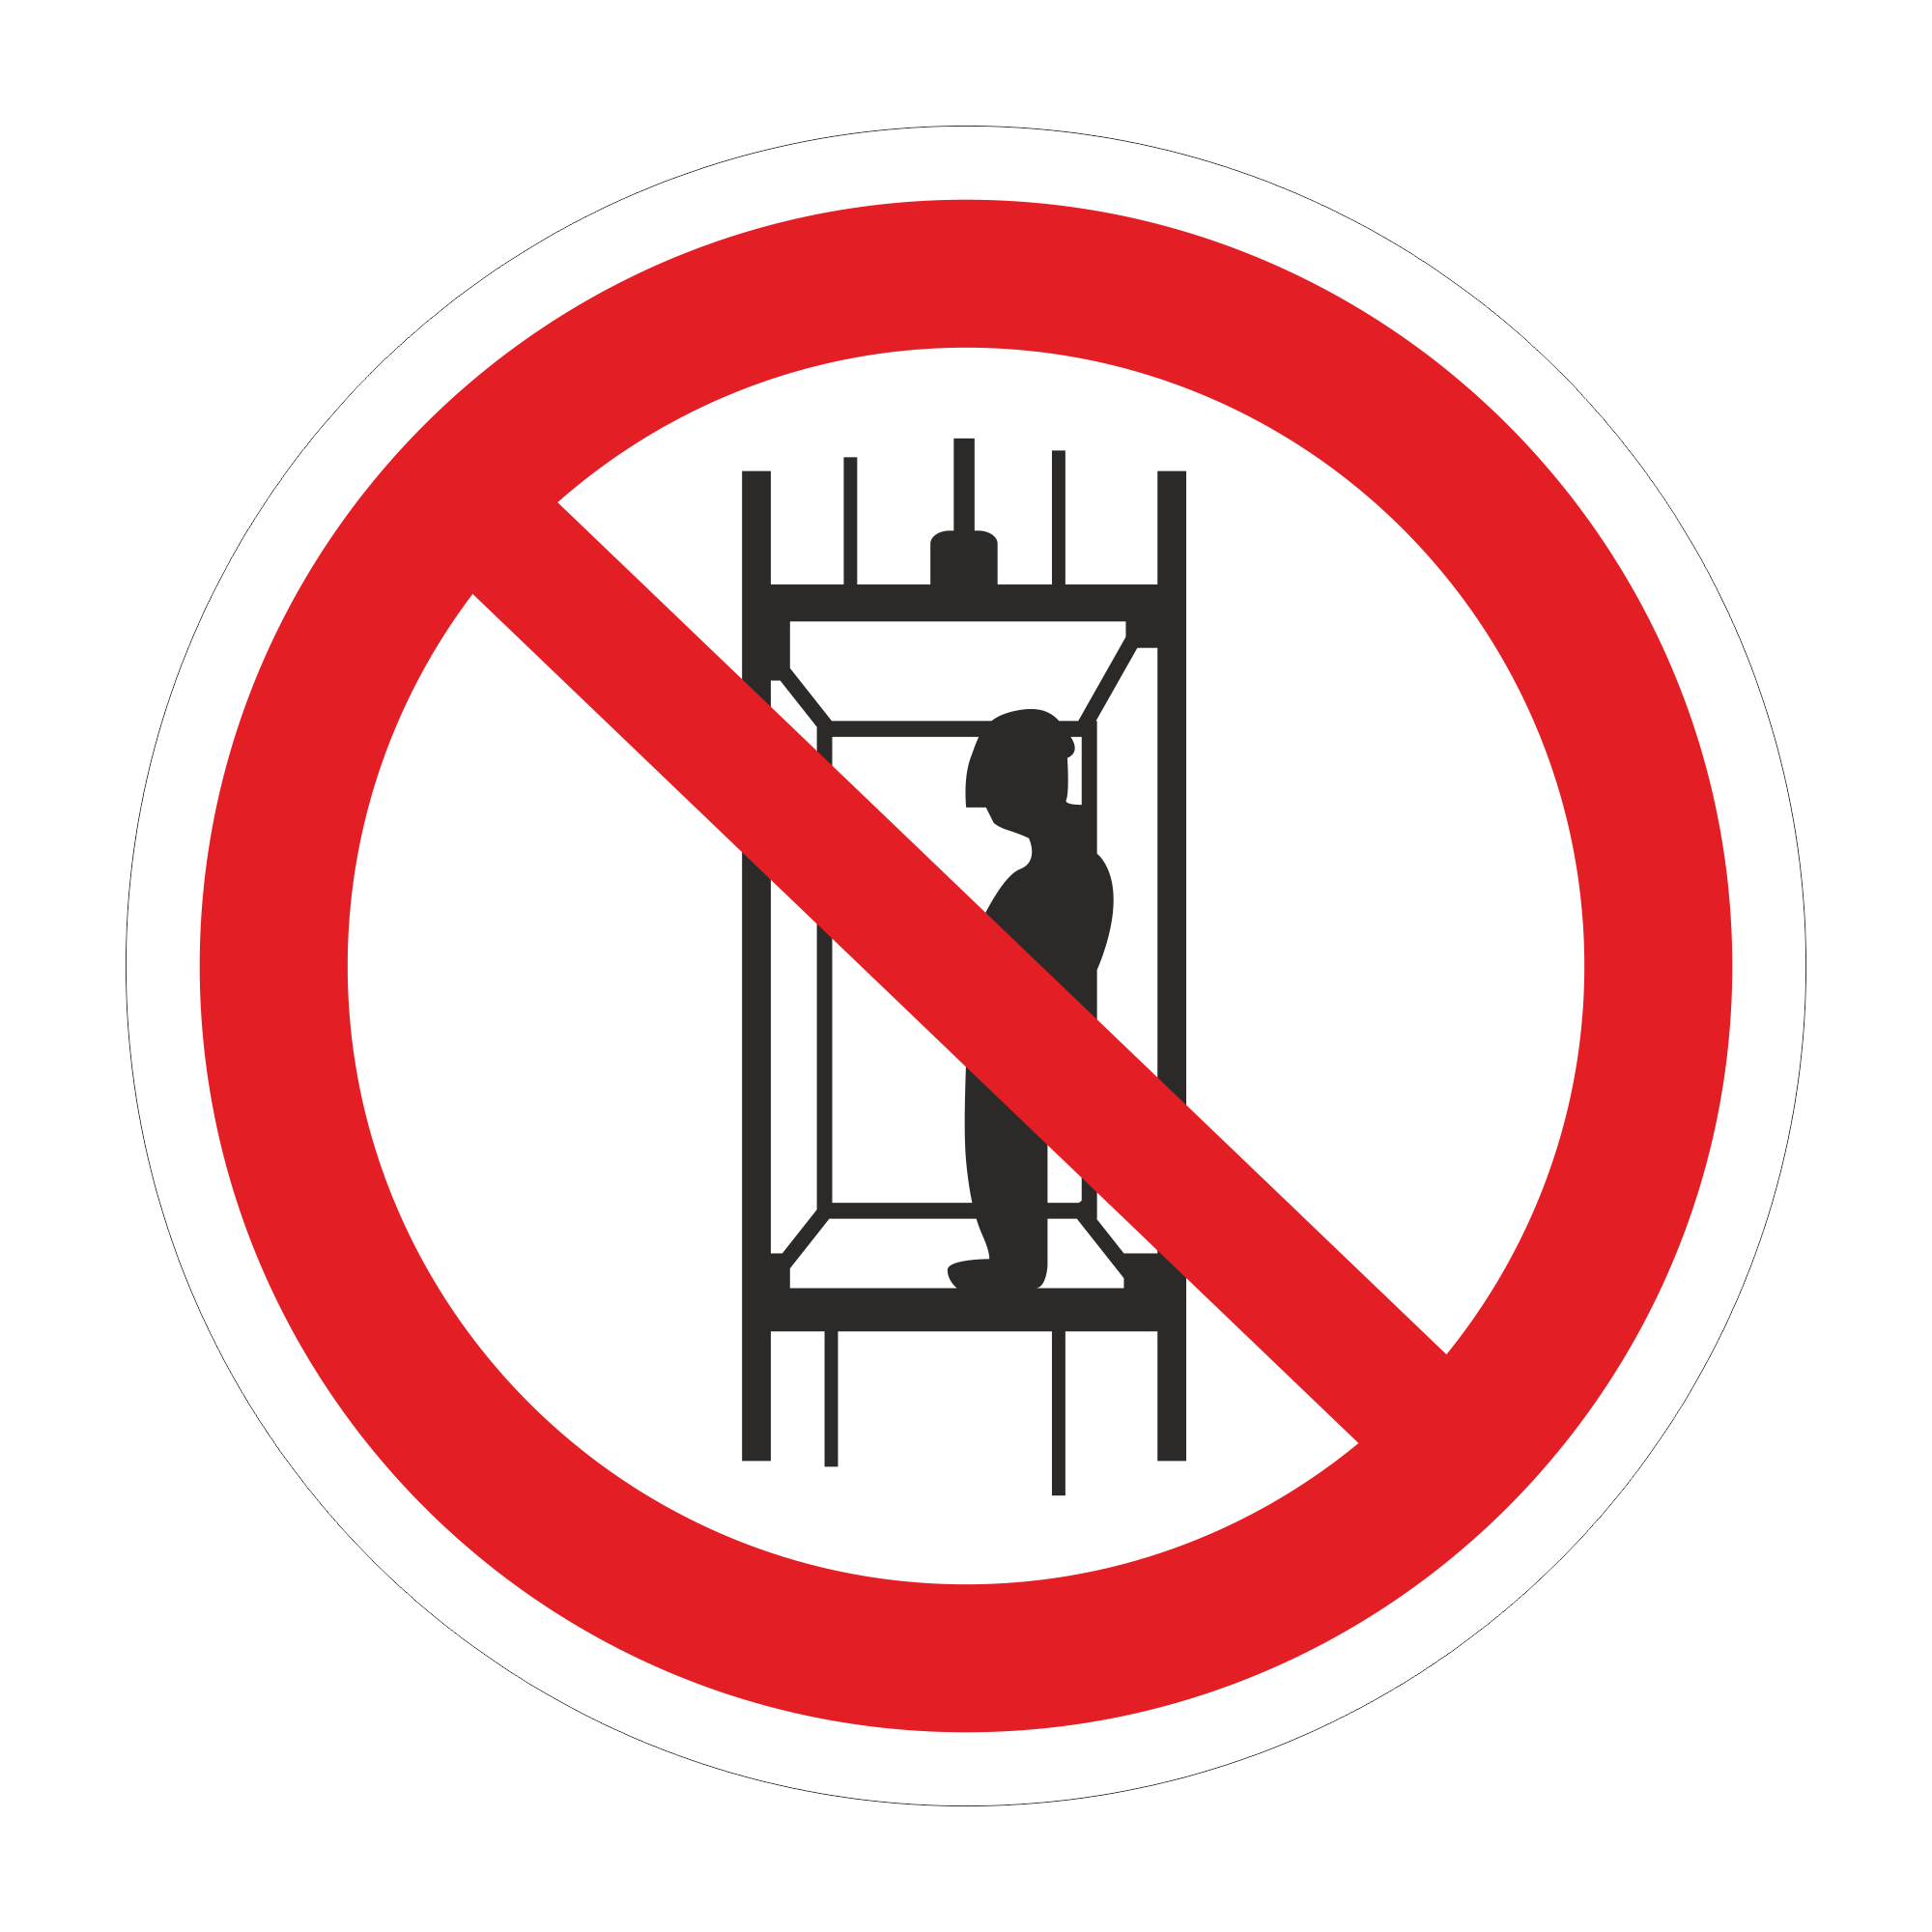 Запрещается в вентиляционных. P13 запрещается подъем (спуск). Запрещающие таблички. Знак запрещения пользования лифтом. Знак запрещается подъем спуск людей по шахтному стволу.